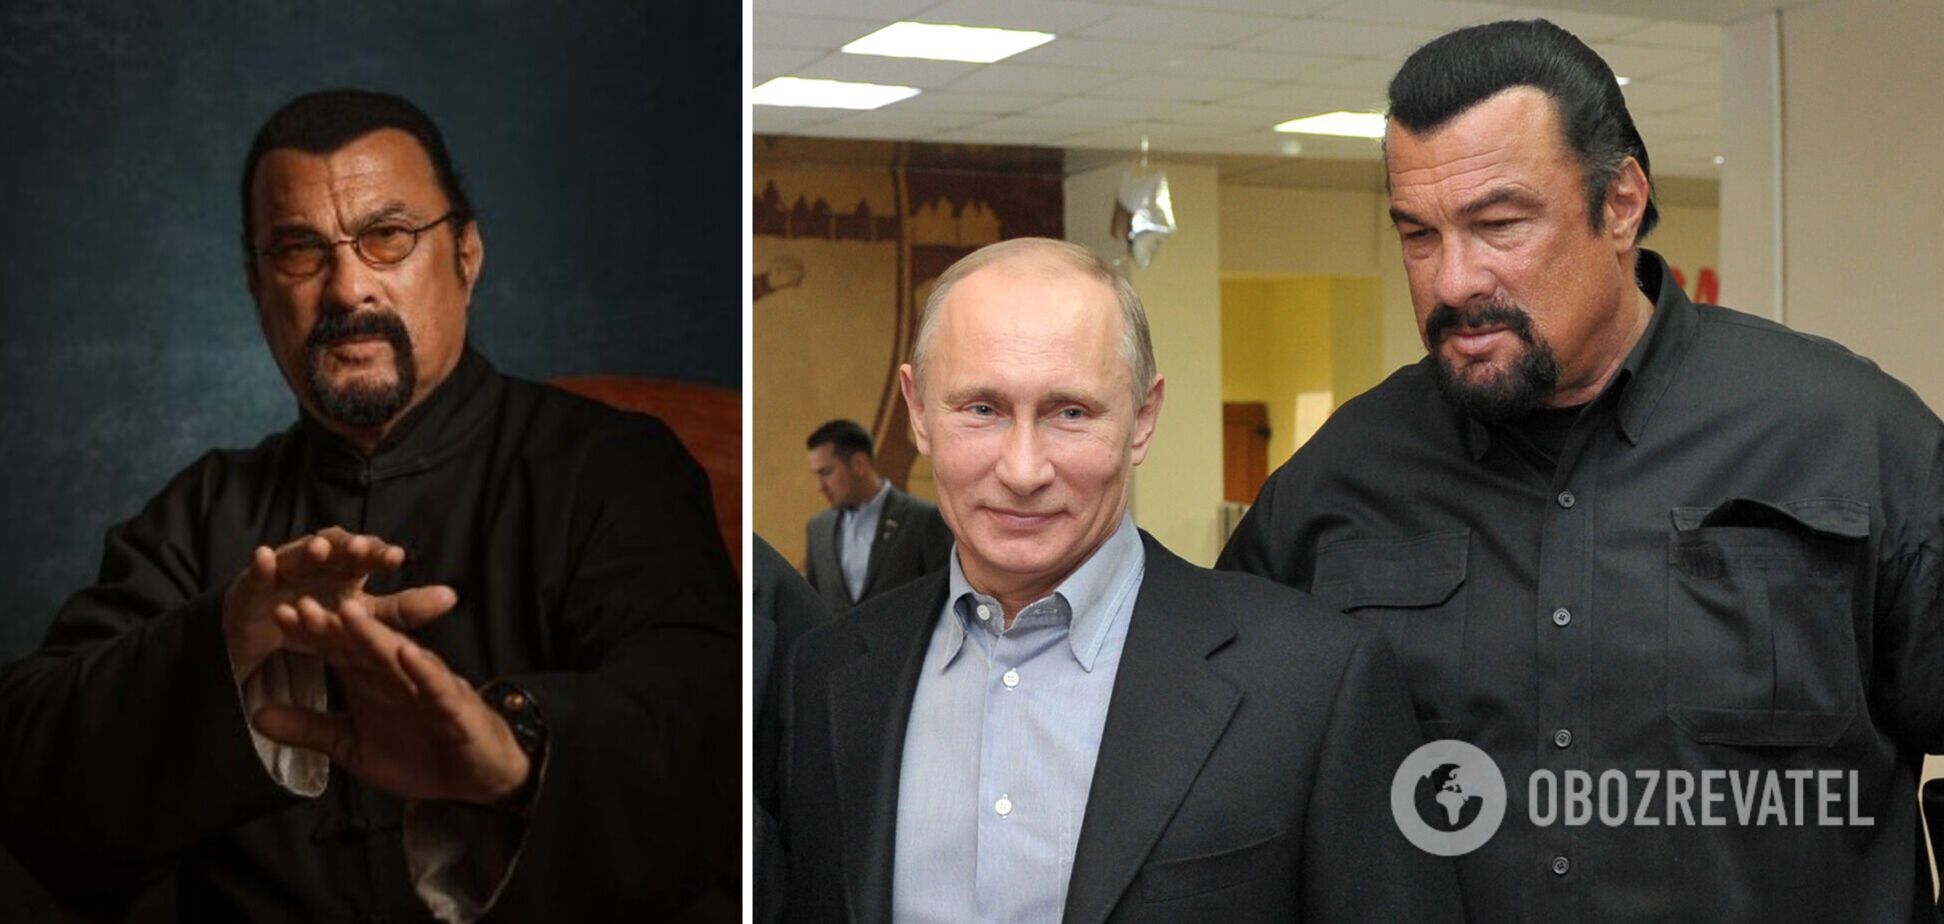 Звезда Голливуда Стивен Сигал выступил на съезде русофилов в Москве, где заявил, что он на 'миллион процентов русский'